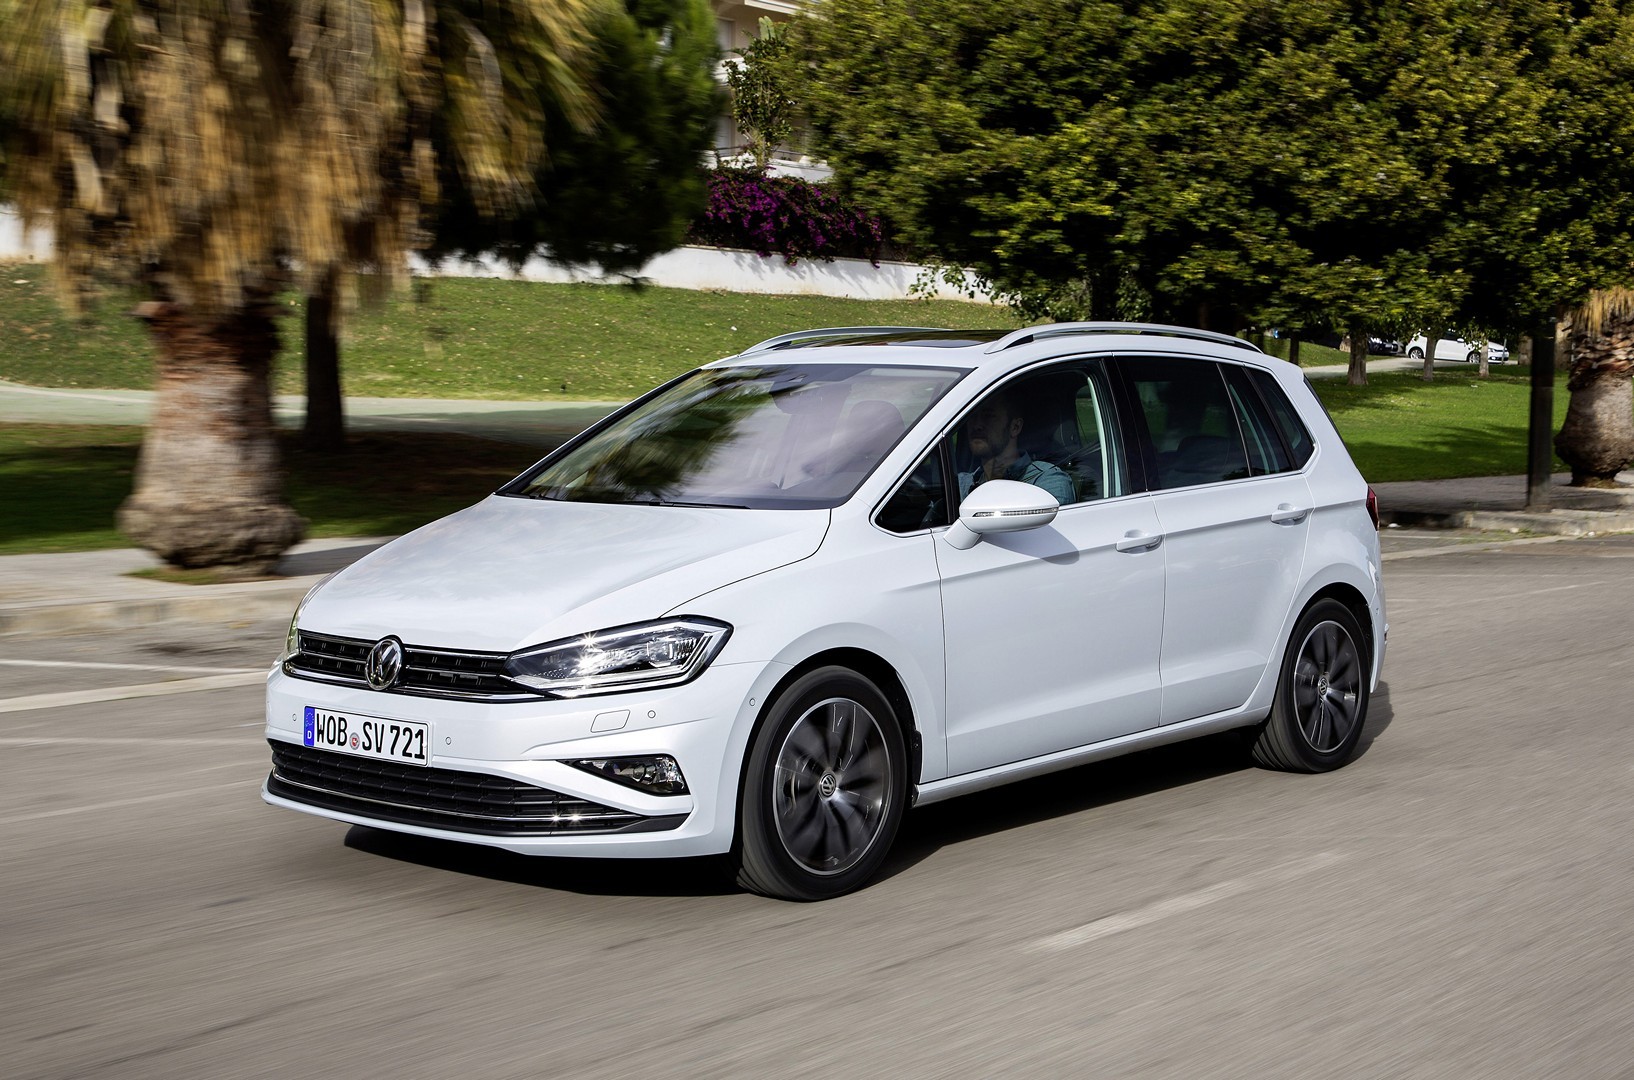 2018 Volkswagen Golf Sportsvan Shows Facelift in New